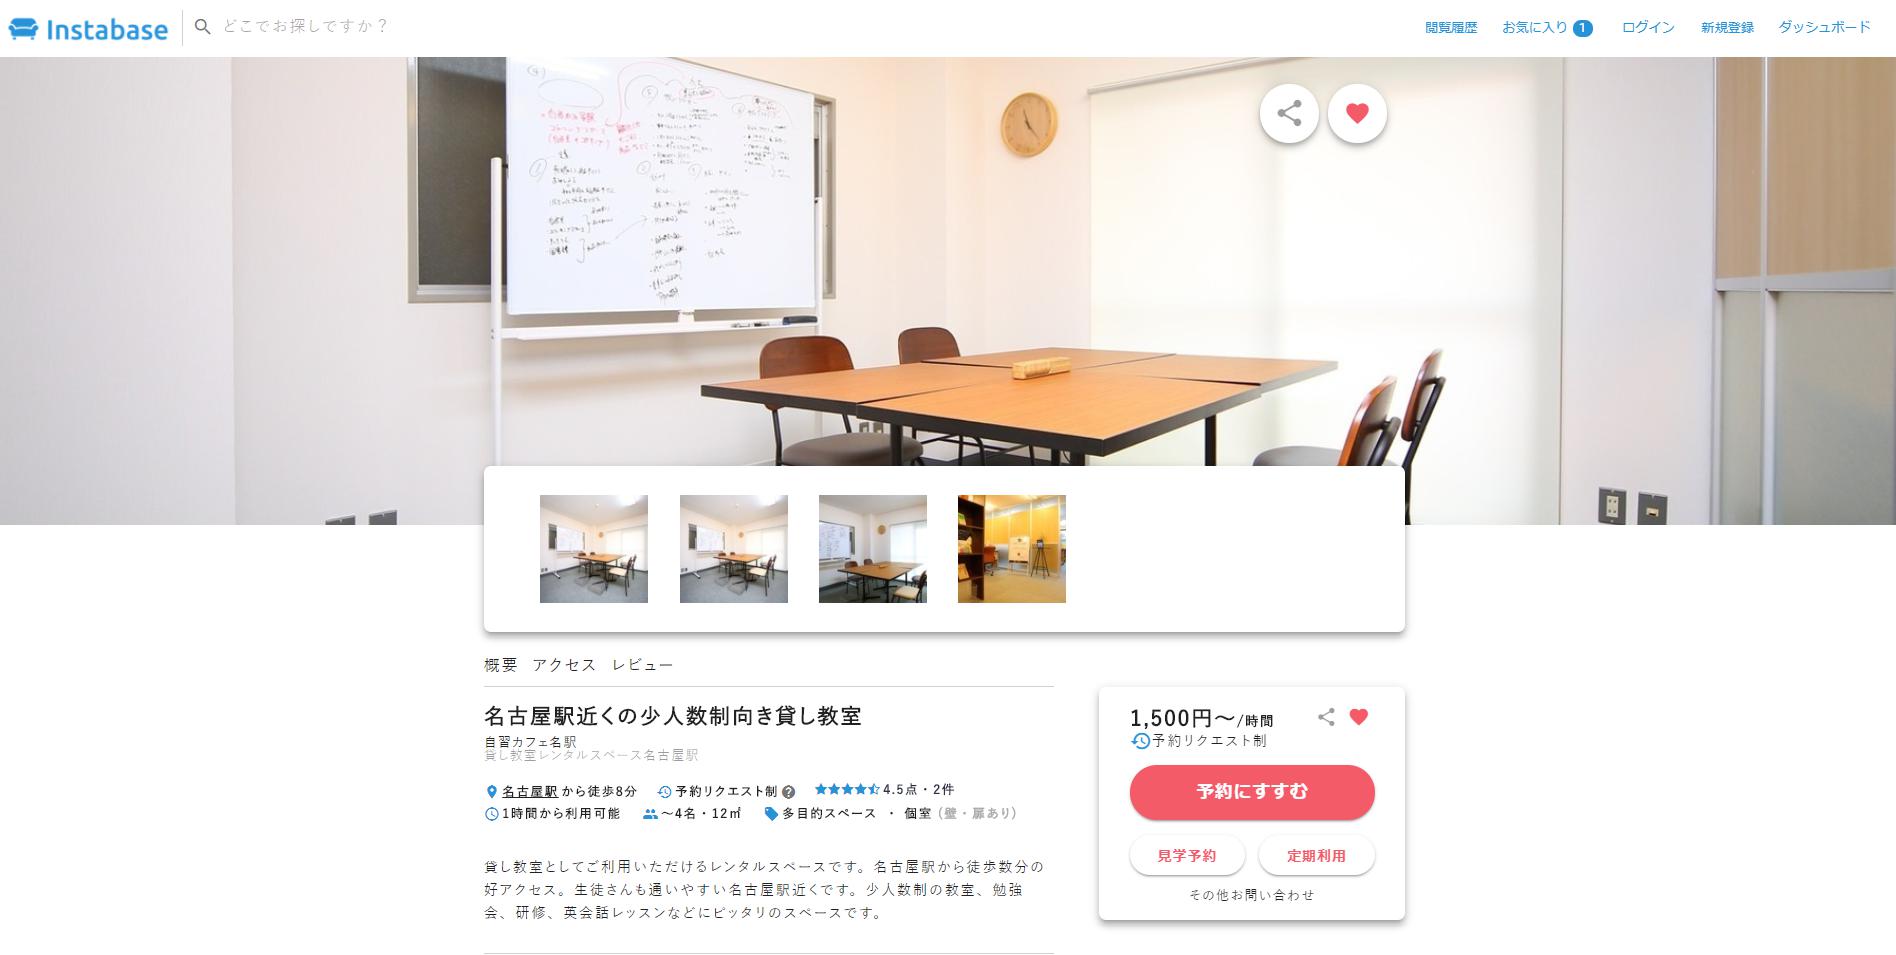 レンタル教室 レンタルスペース 名古屋駅 勉強場所は名古屋丸の内 千種の有料自習室 イントロベース